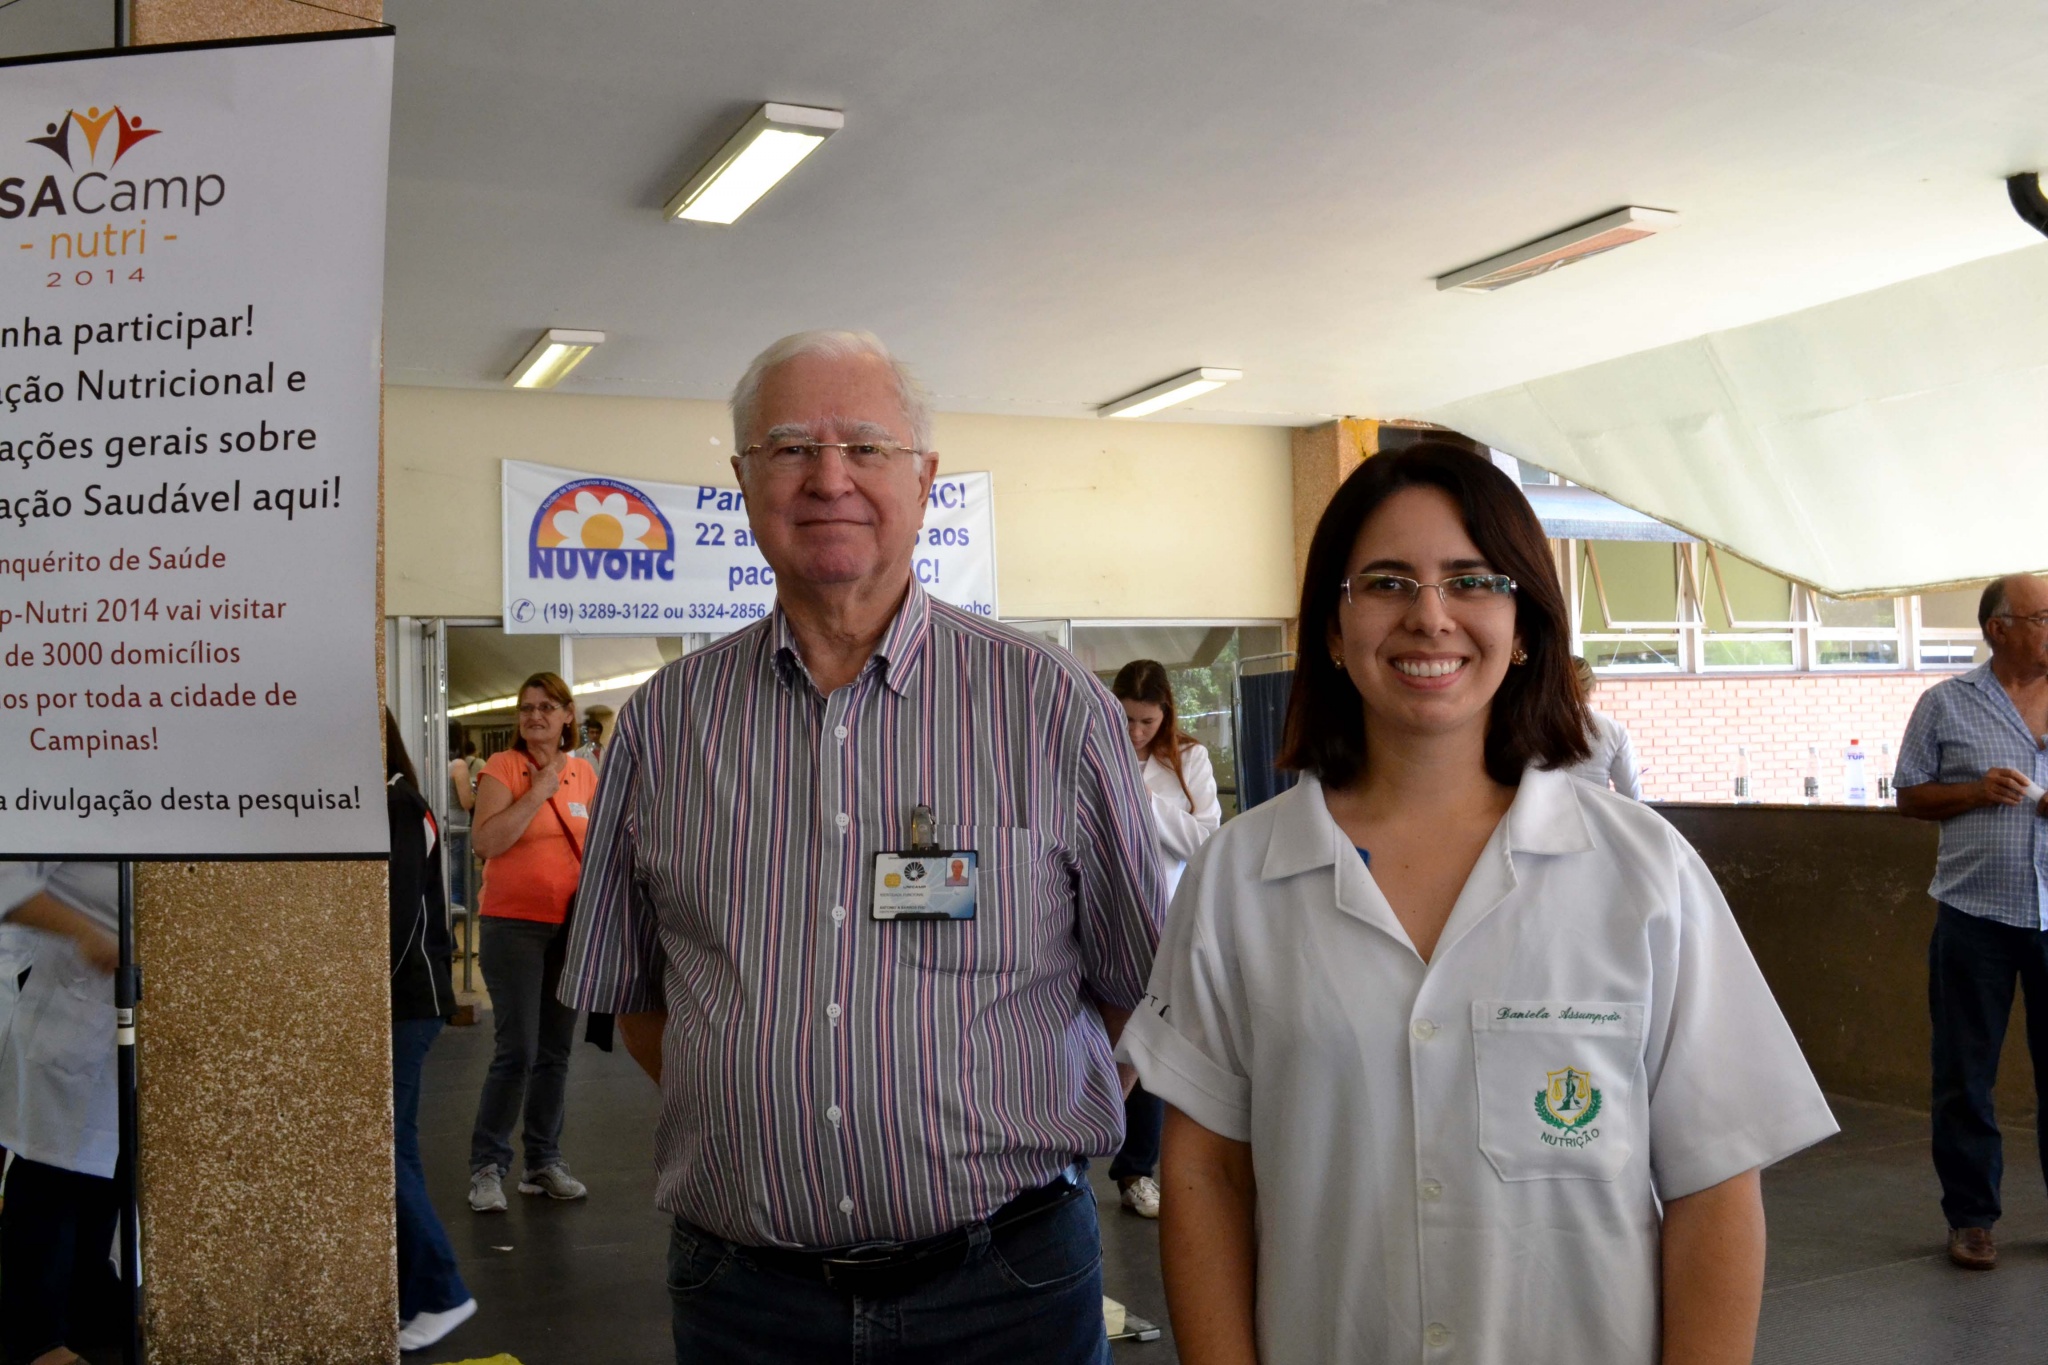 Prof. Antonio de Azevedo Barros Filho, coordenador do ISACamp Nutri 2014, e a nutricionista Daniela Assumpção, coordenadora operacional da pesquisa